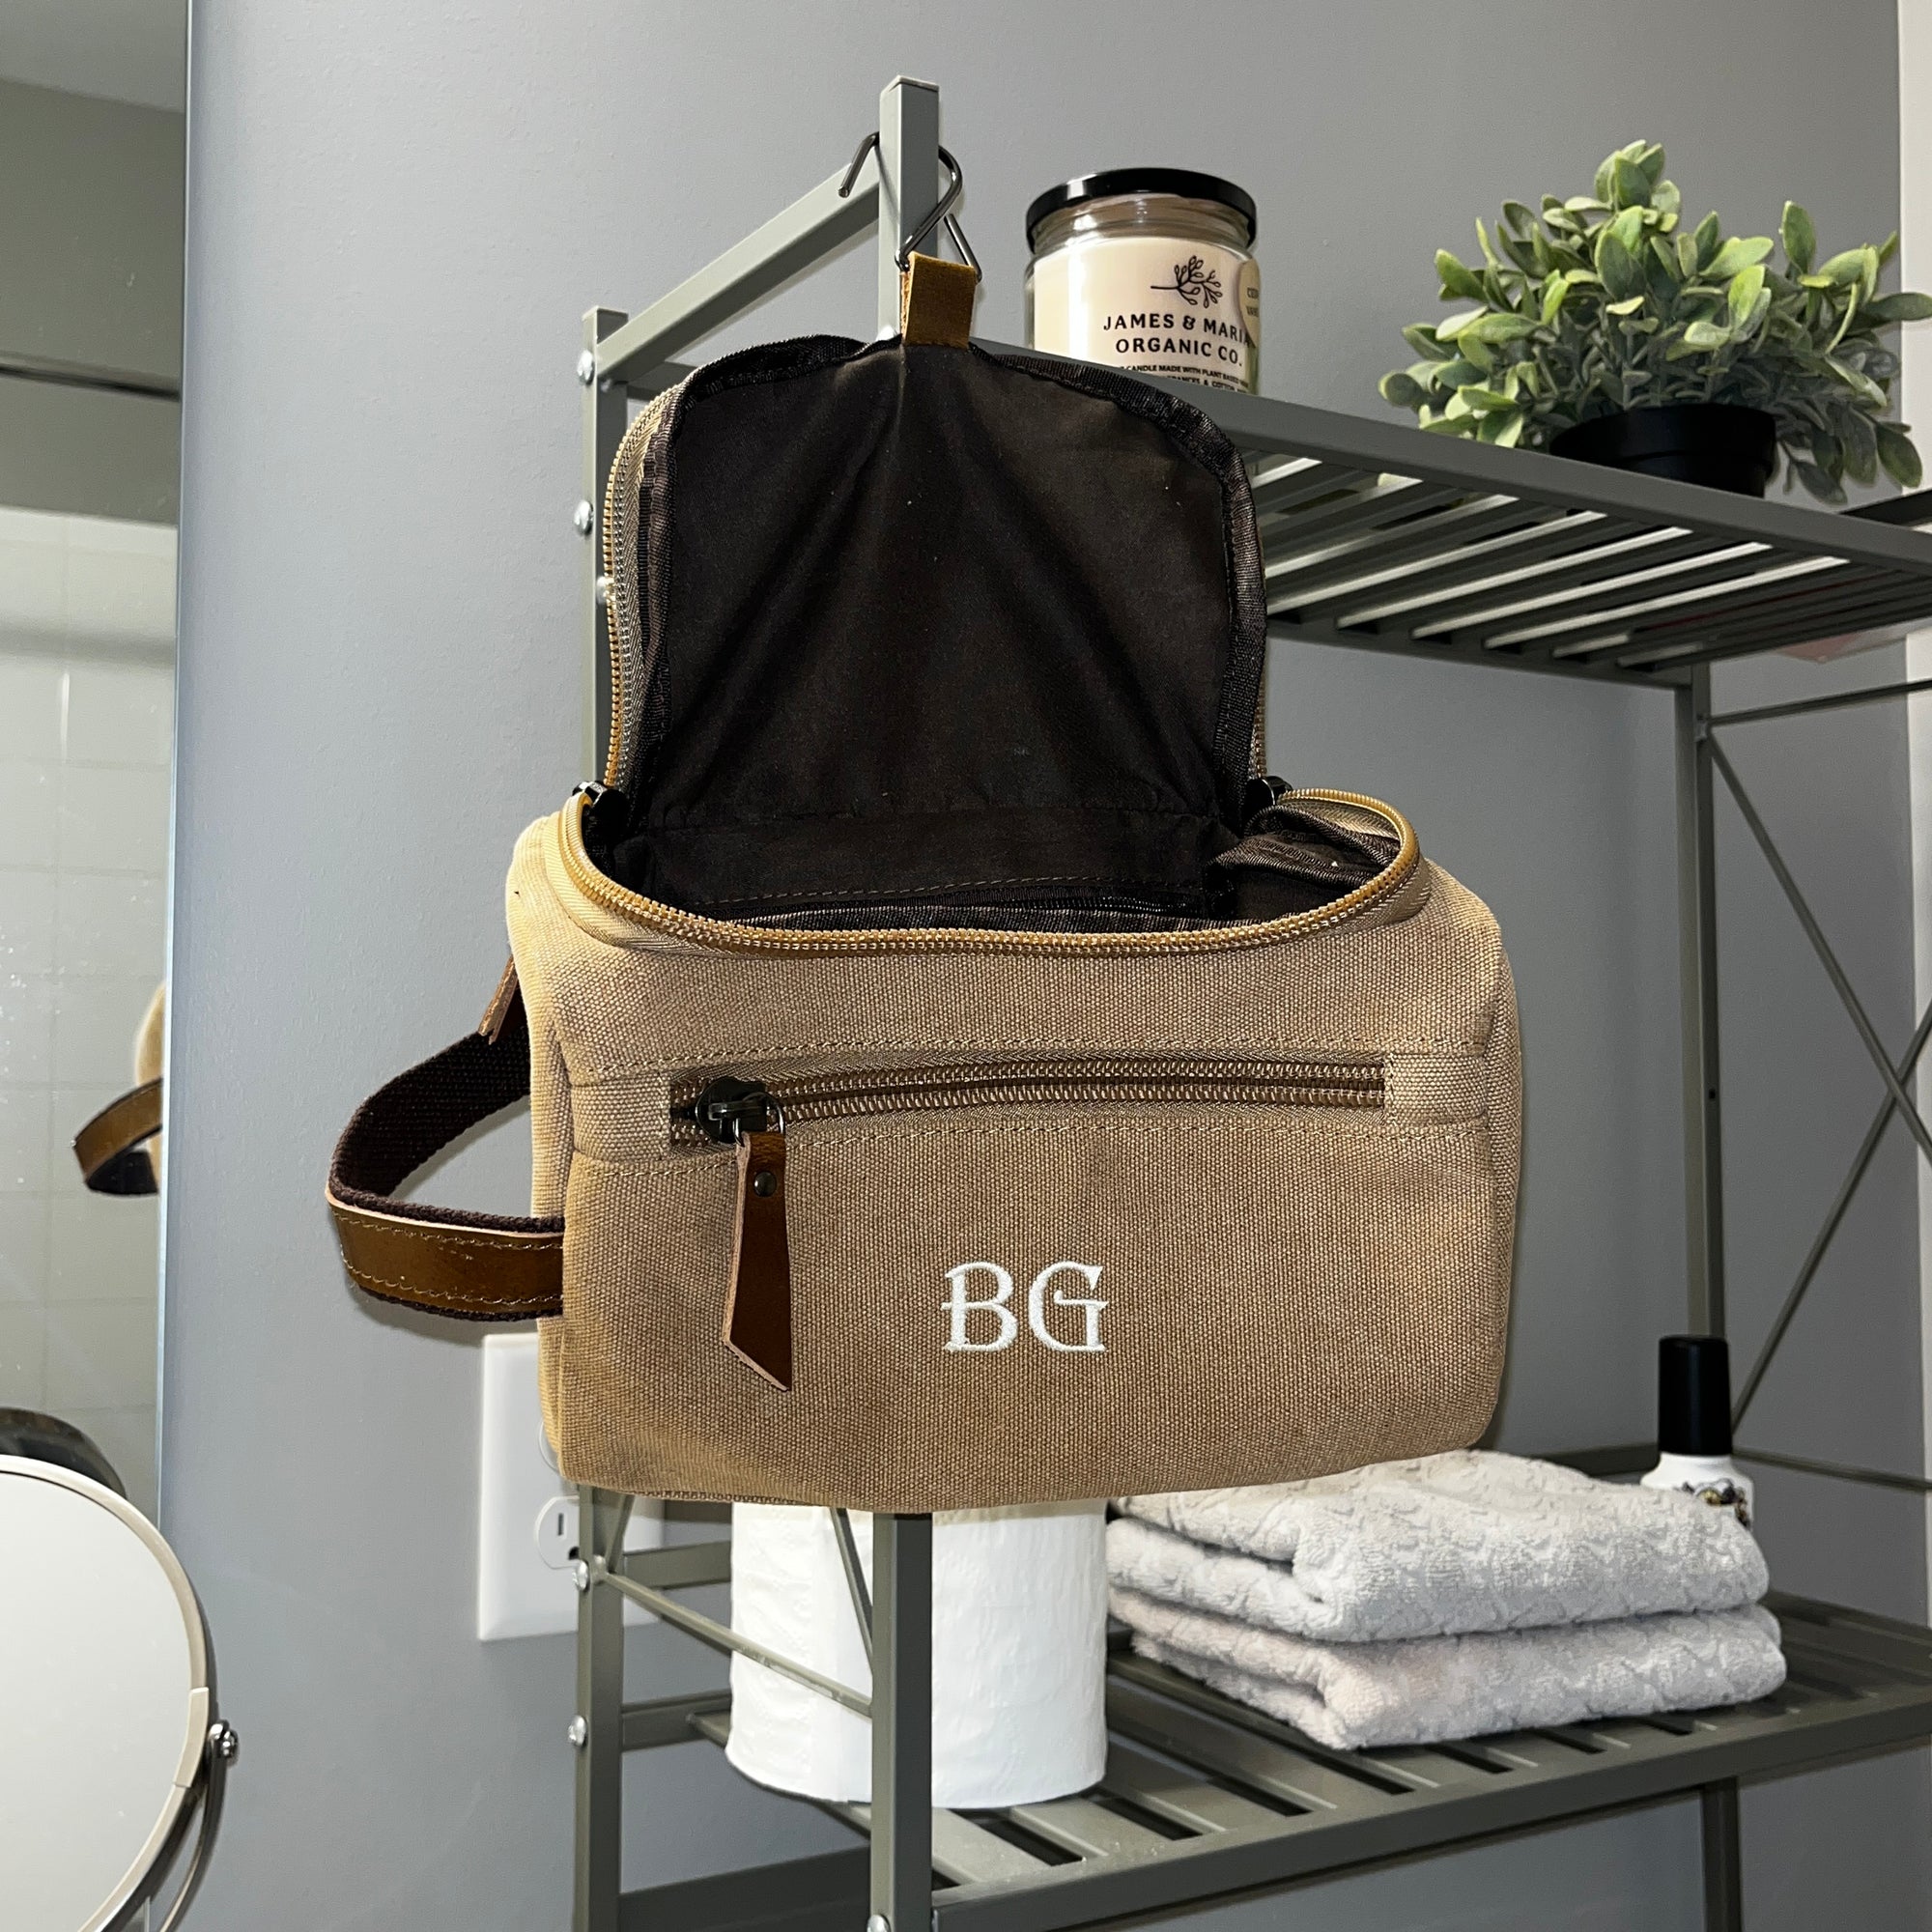 Gentleman's Monogram Toiletry Bag